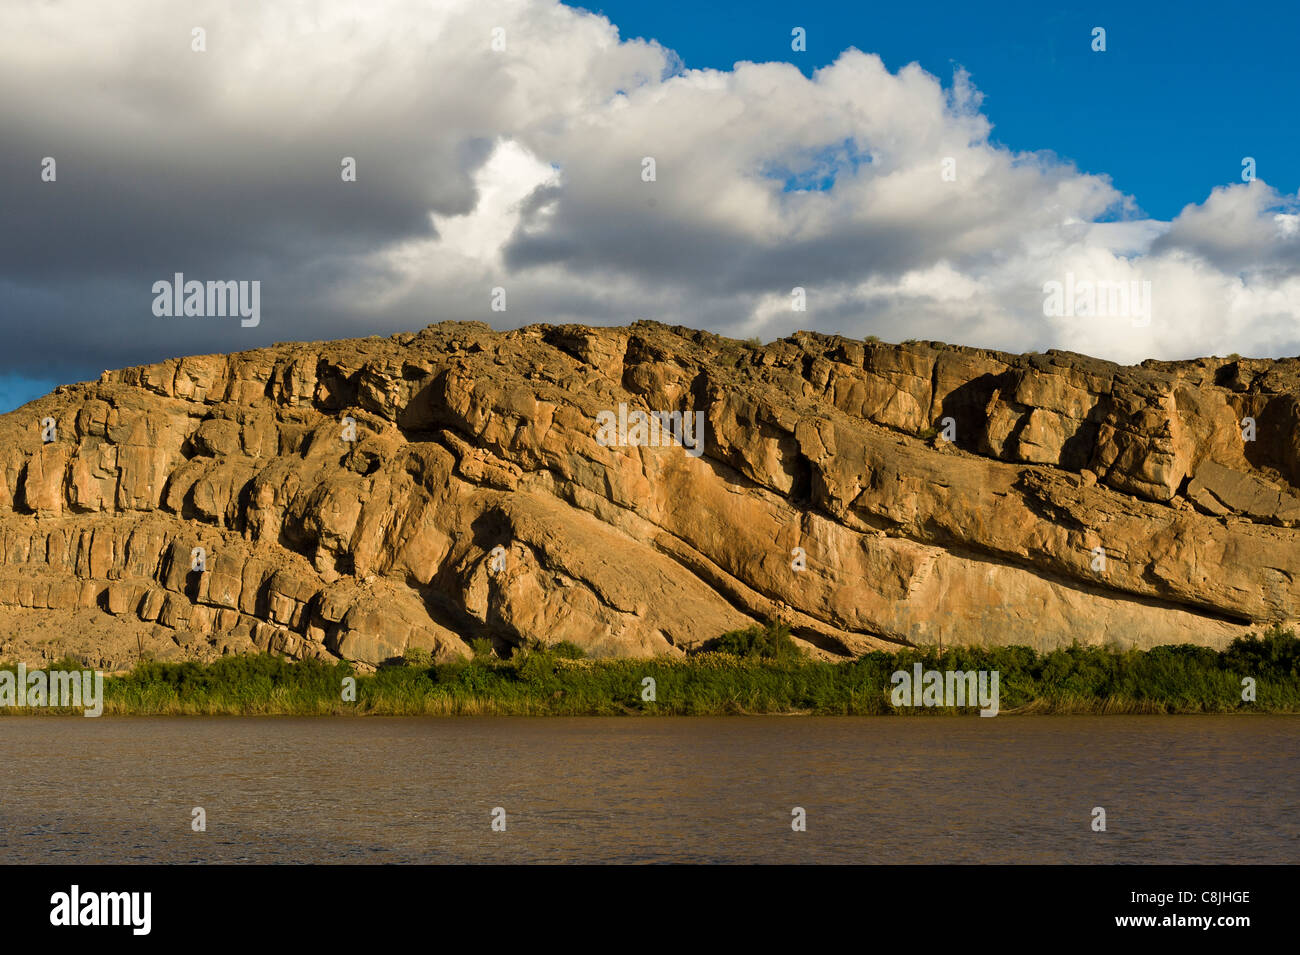 Pliegue geológico en una formación rocosa con capas en la frontera del río Oranje de Sudáfrica y Namibia Foto de stock